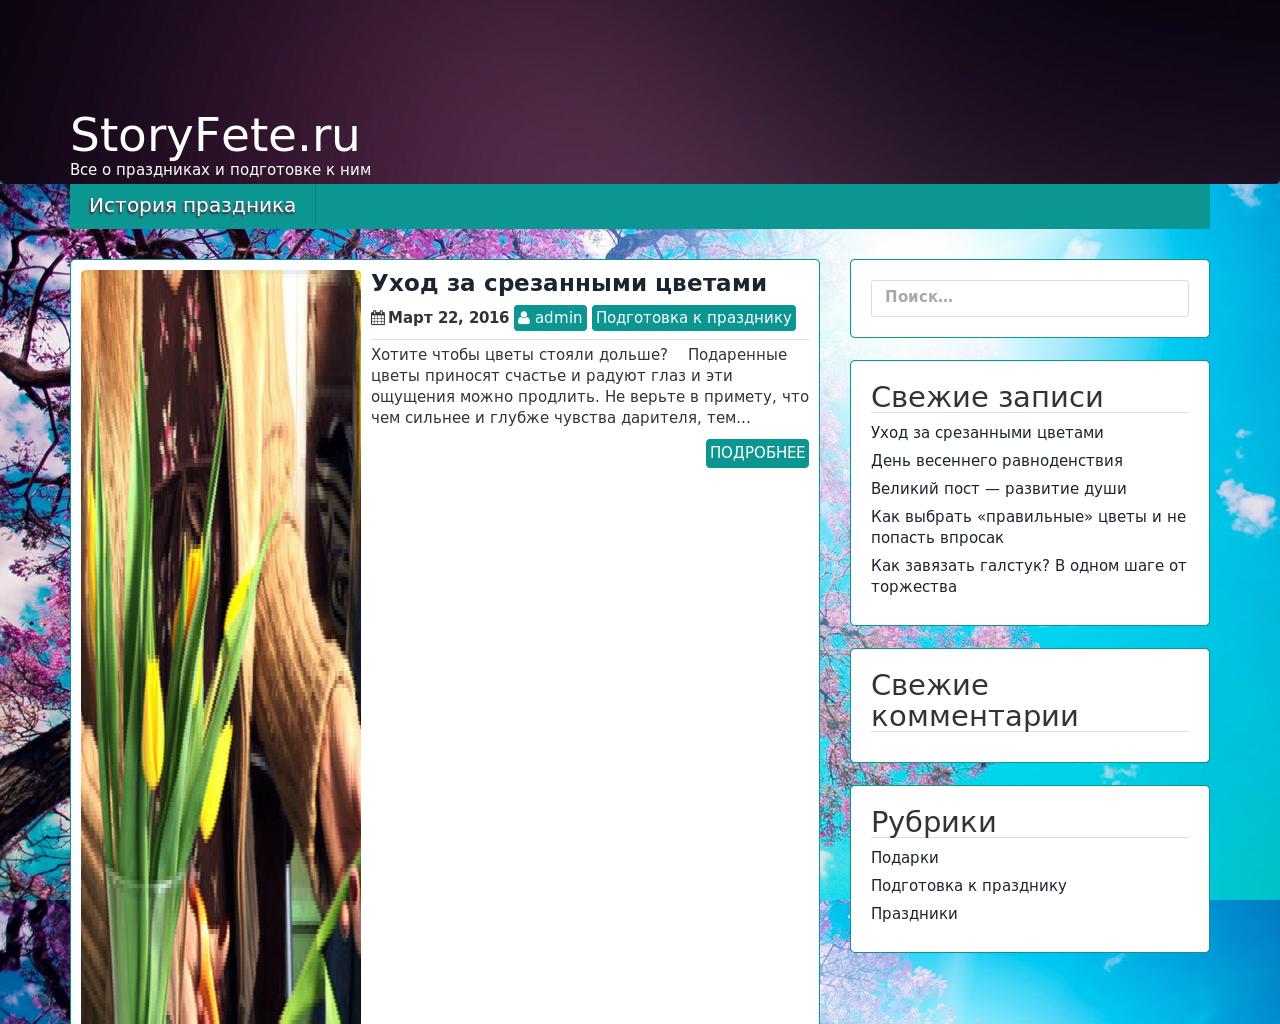 Изображение сайта storyfete.ru в разрешении 1280x1024